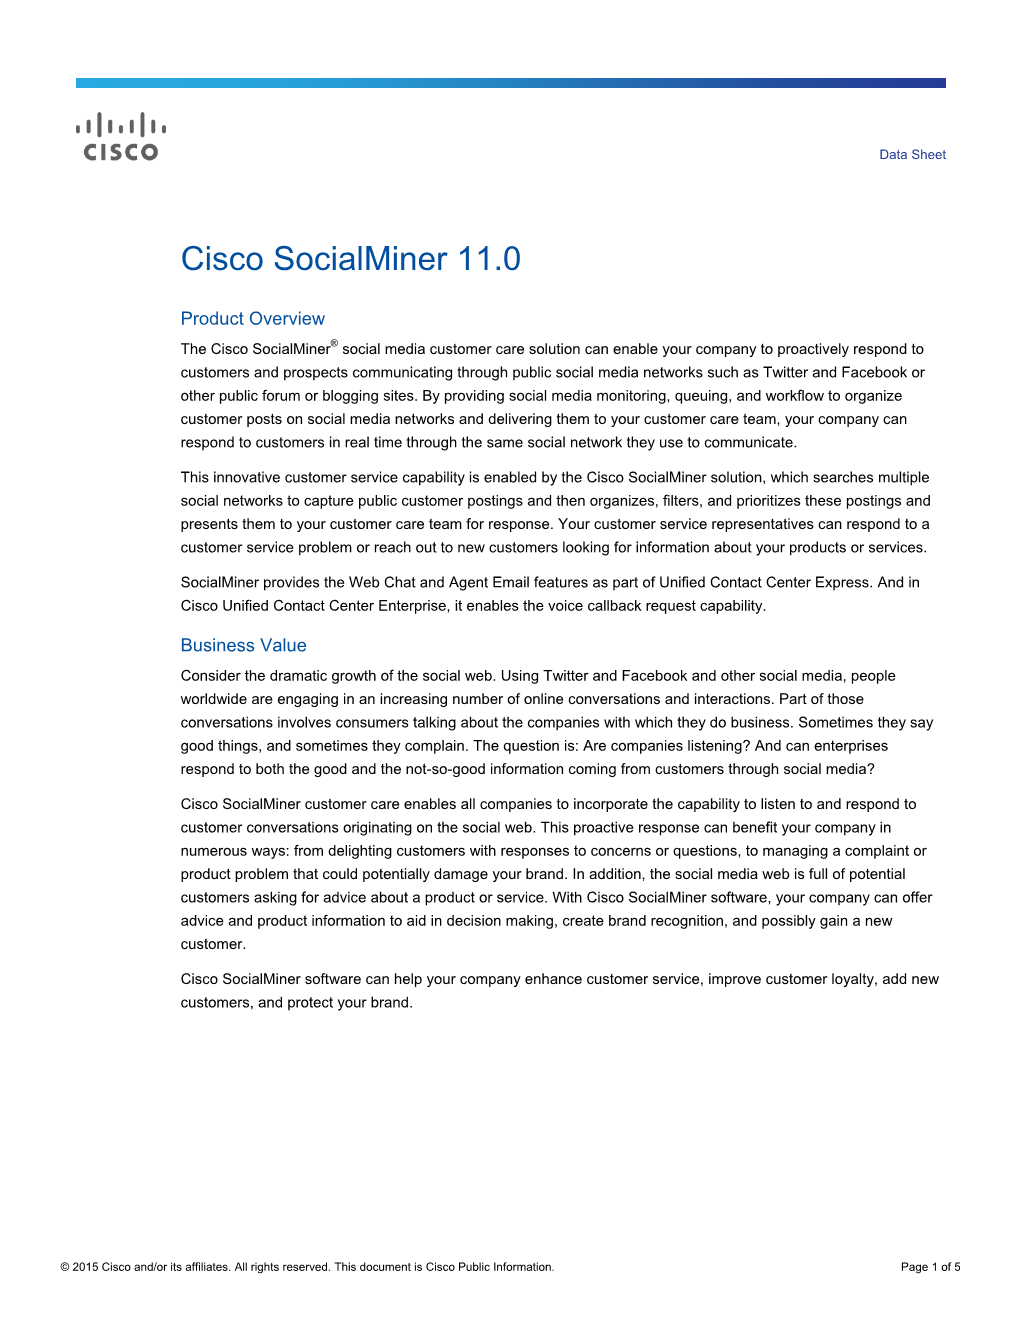 Cisco Socialminer 11.0 Data Sheet